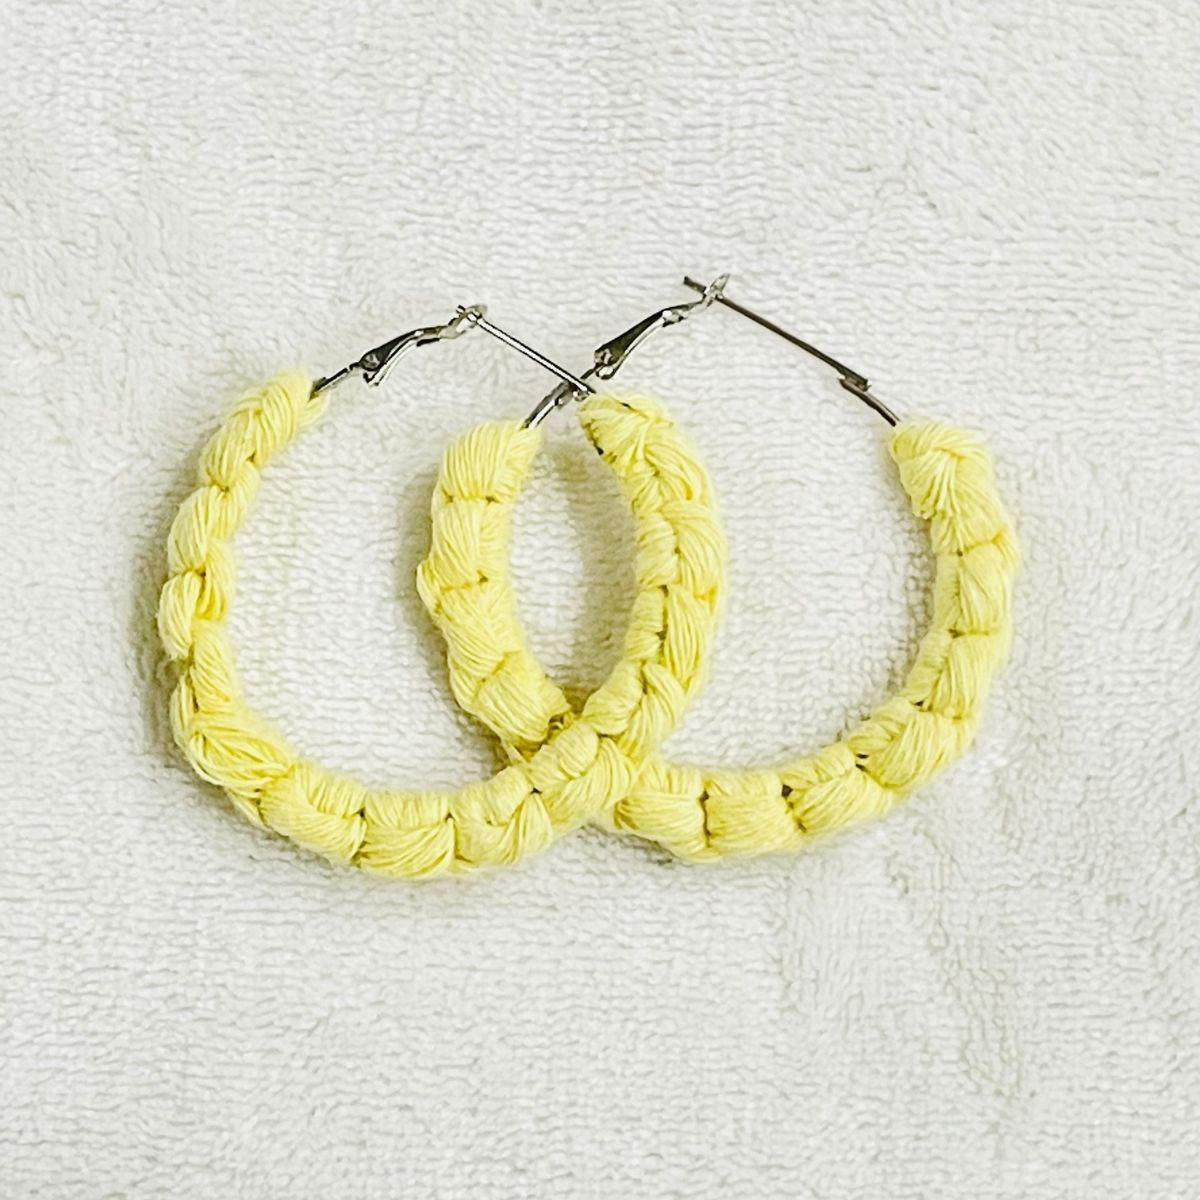 Boho Chic Macrame Earrings | Modish Hoop